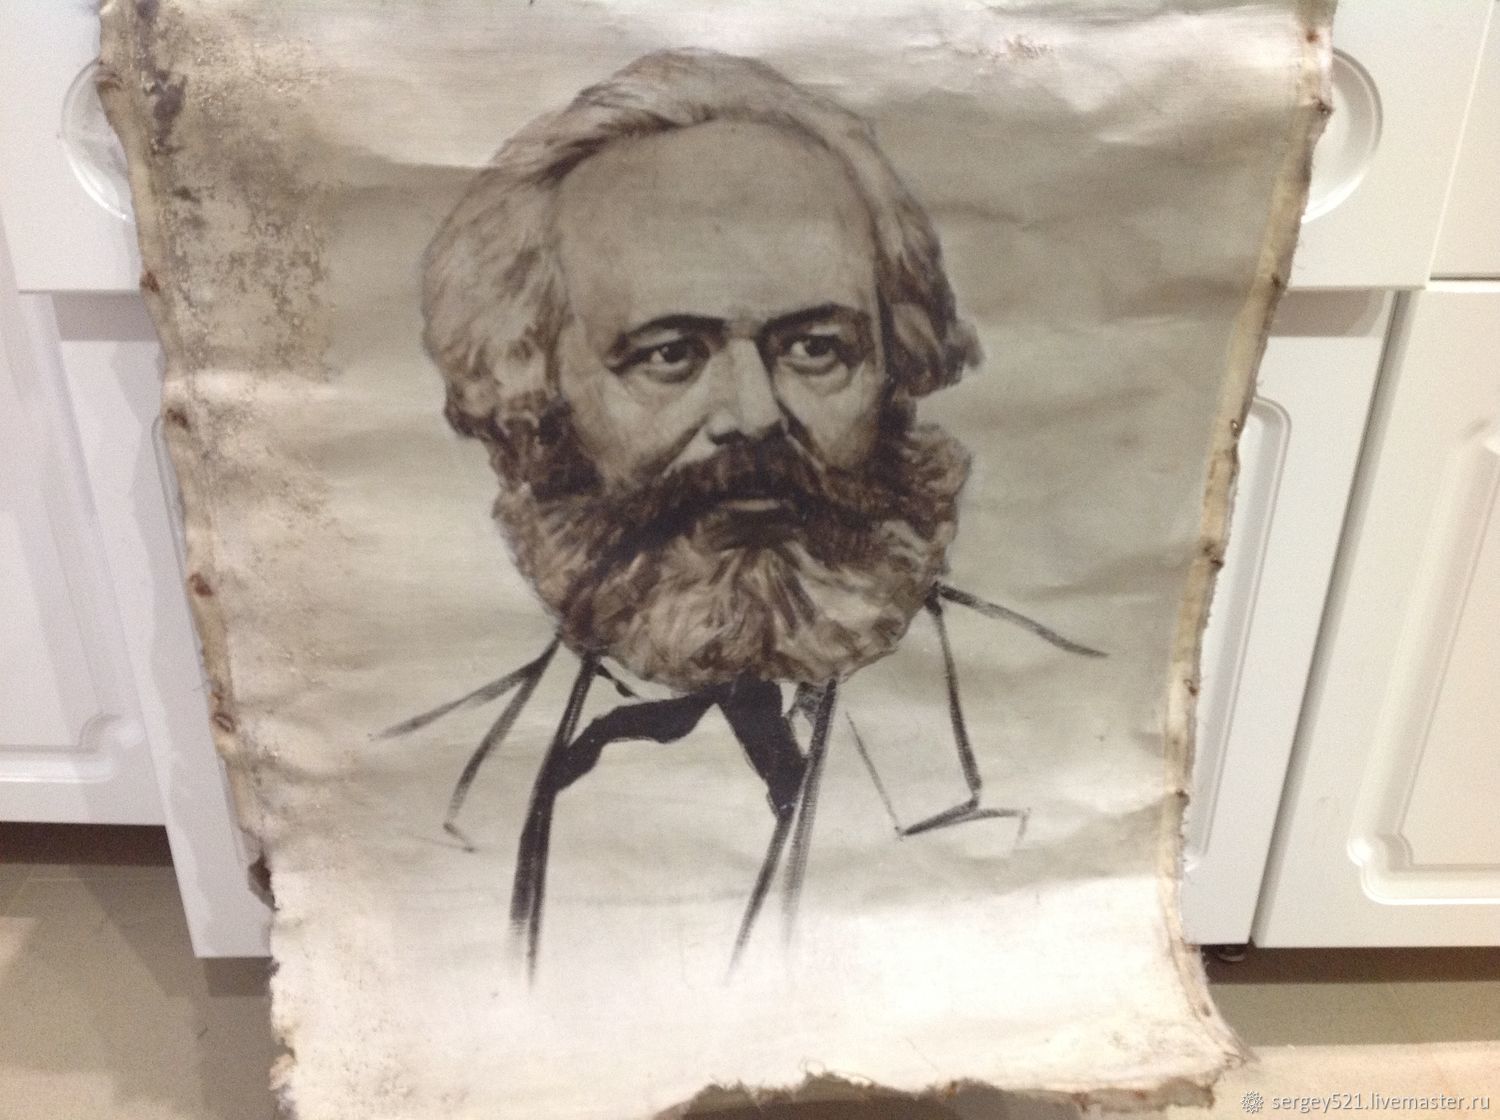 Портрет Карла Маркса в хорошем качестве